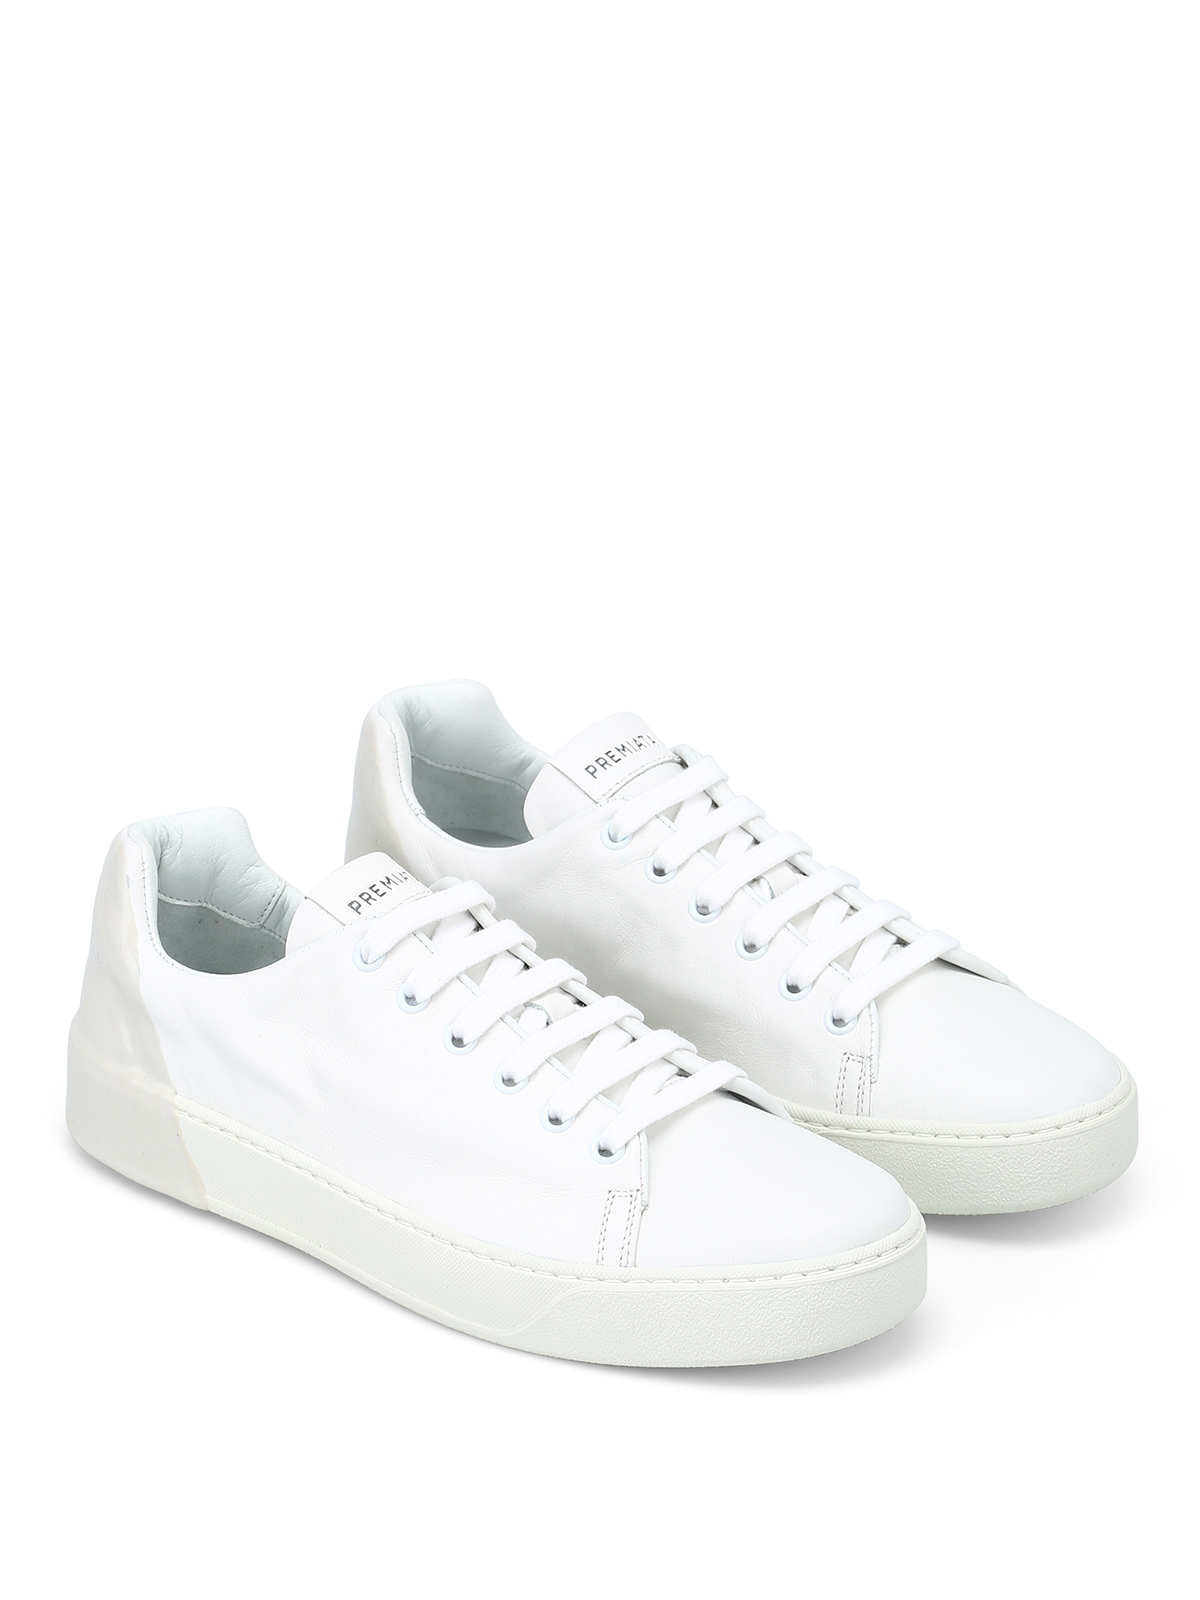 Premiata - Polo white leather sneakers 